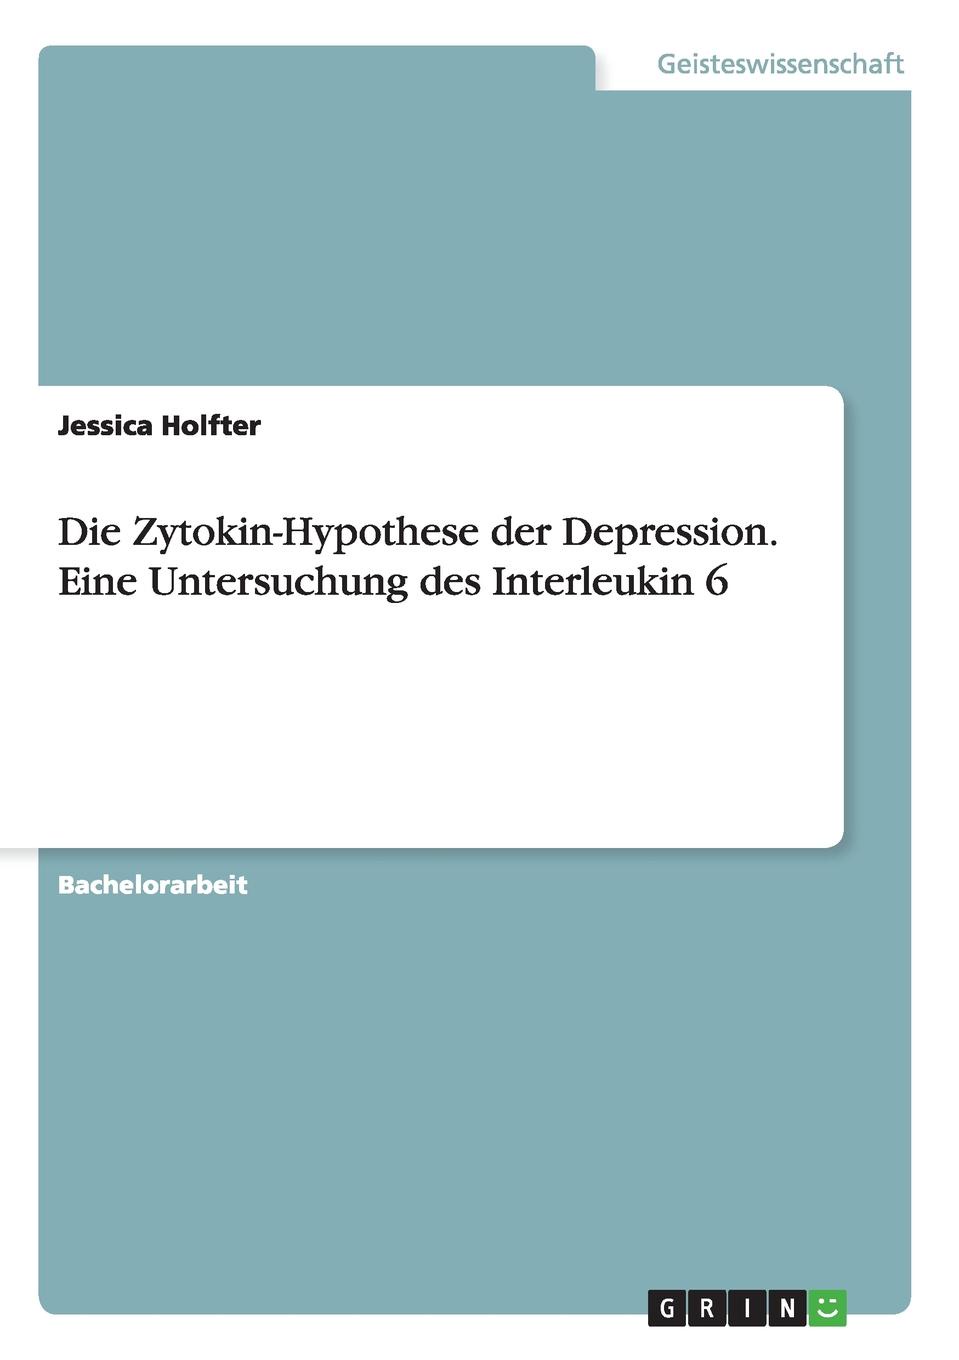 Die Zytokin-Hypothese der Depression. Eine Untersuchung des Interleukin 6